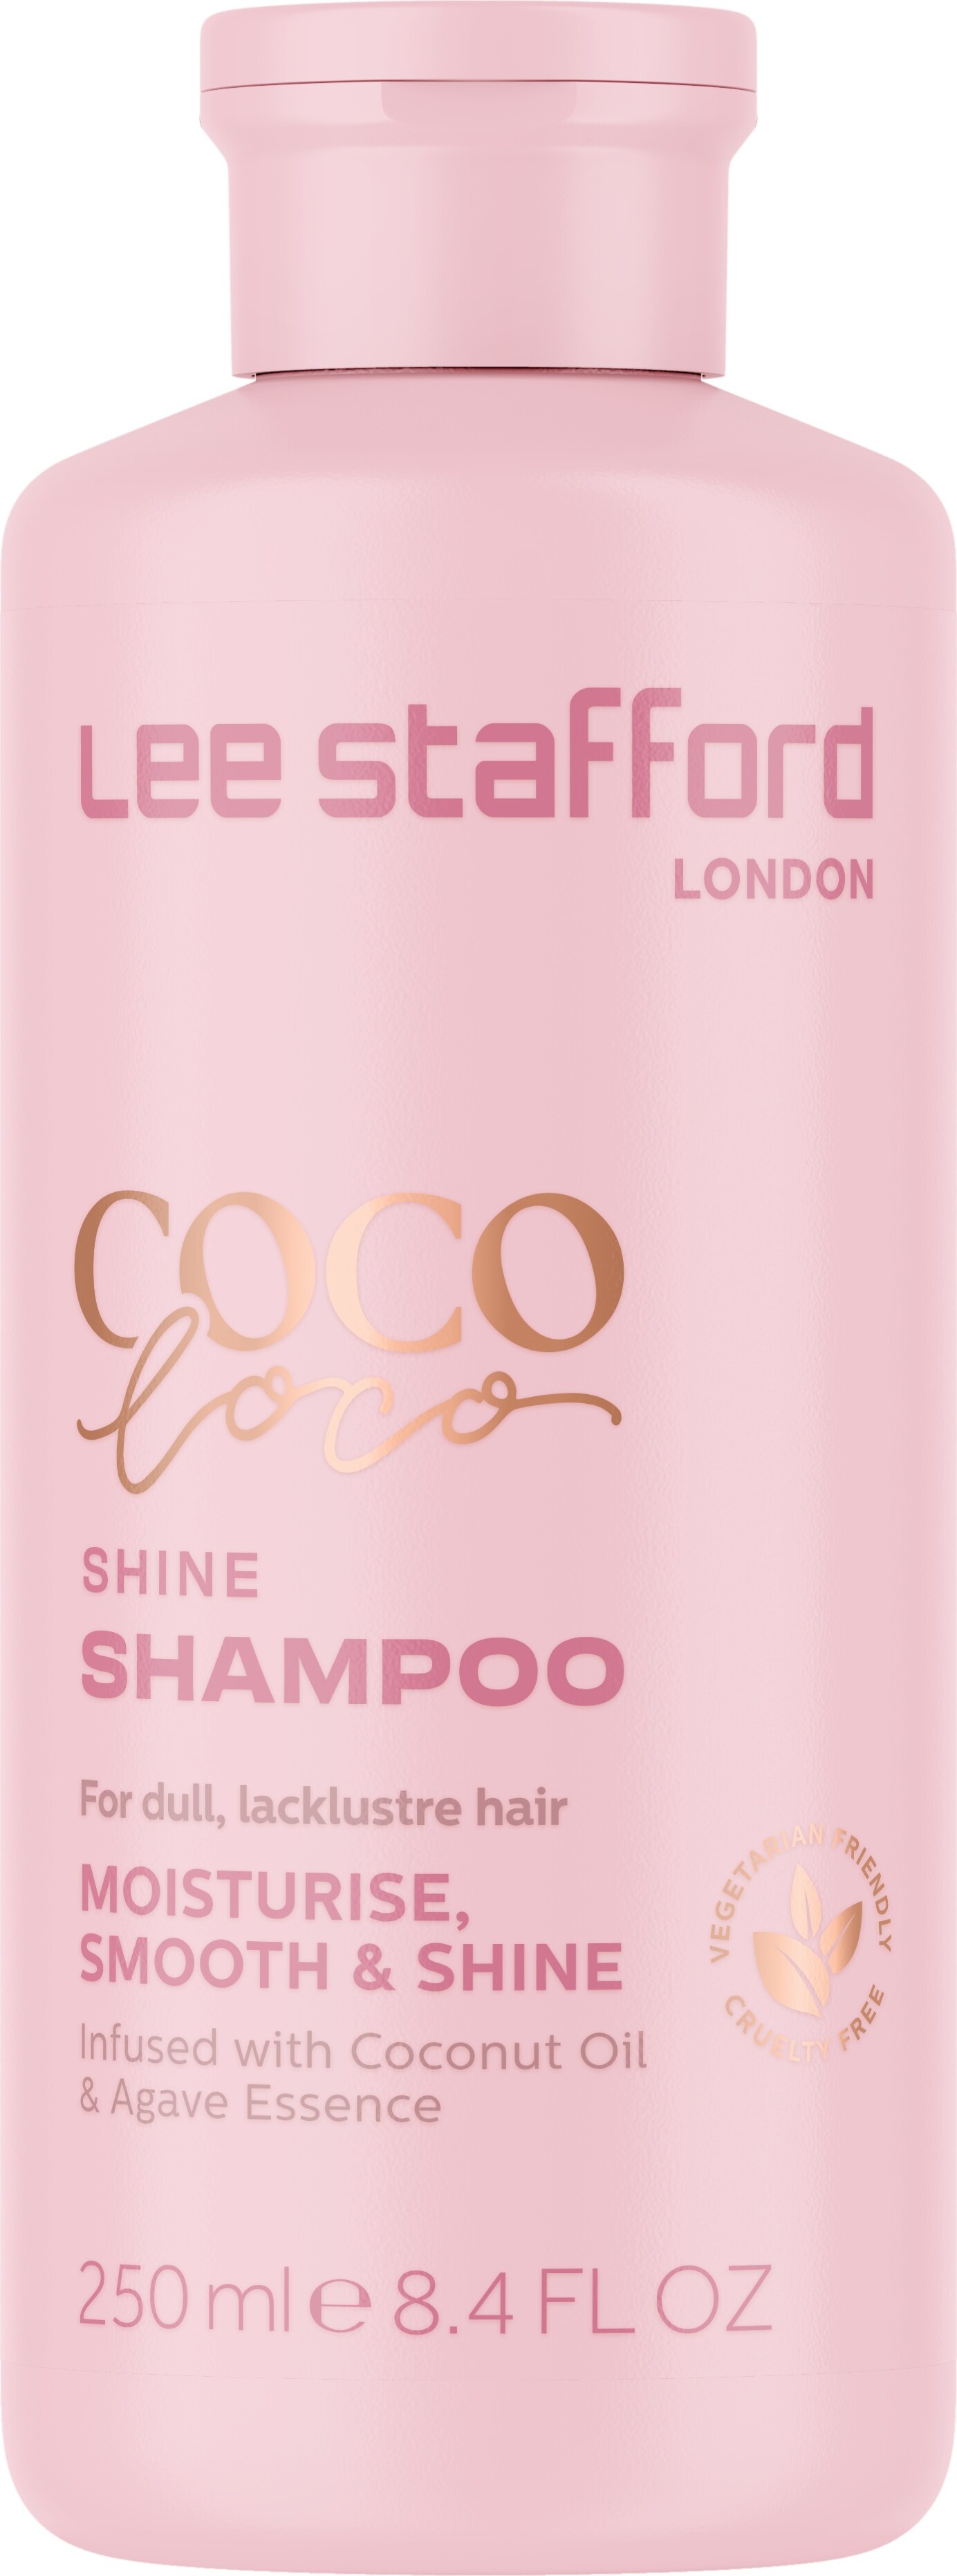 Billede af Lee Stafford - Coco Loco Shine Shampoo - 250 Ml